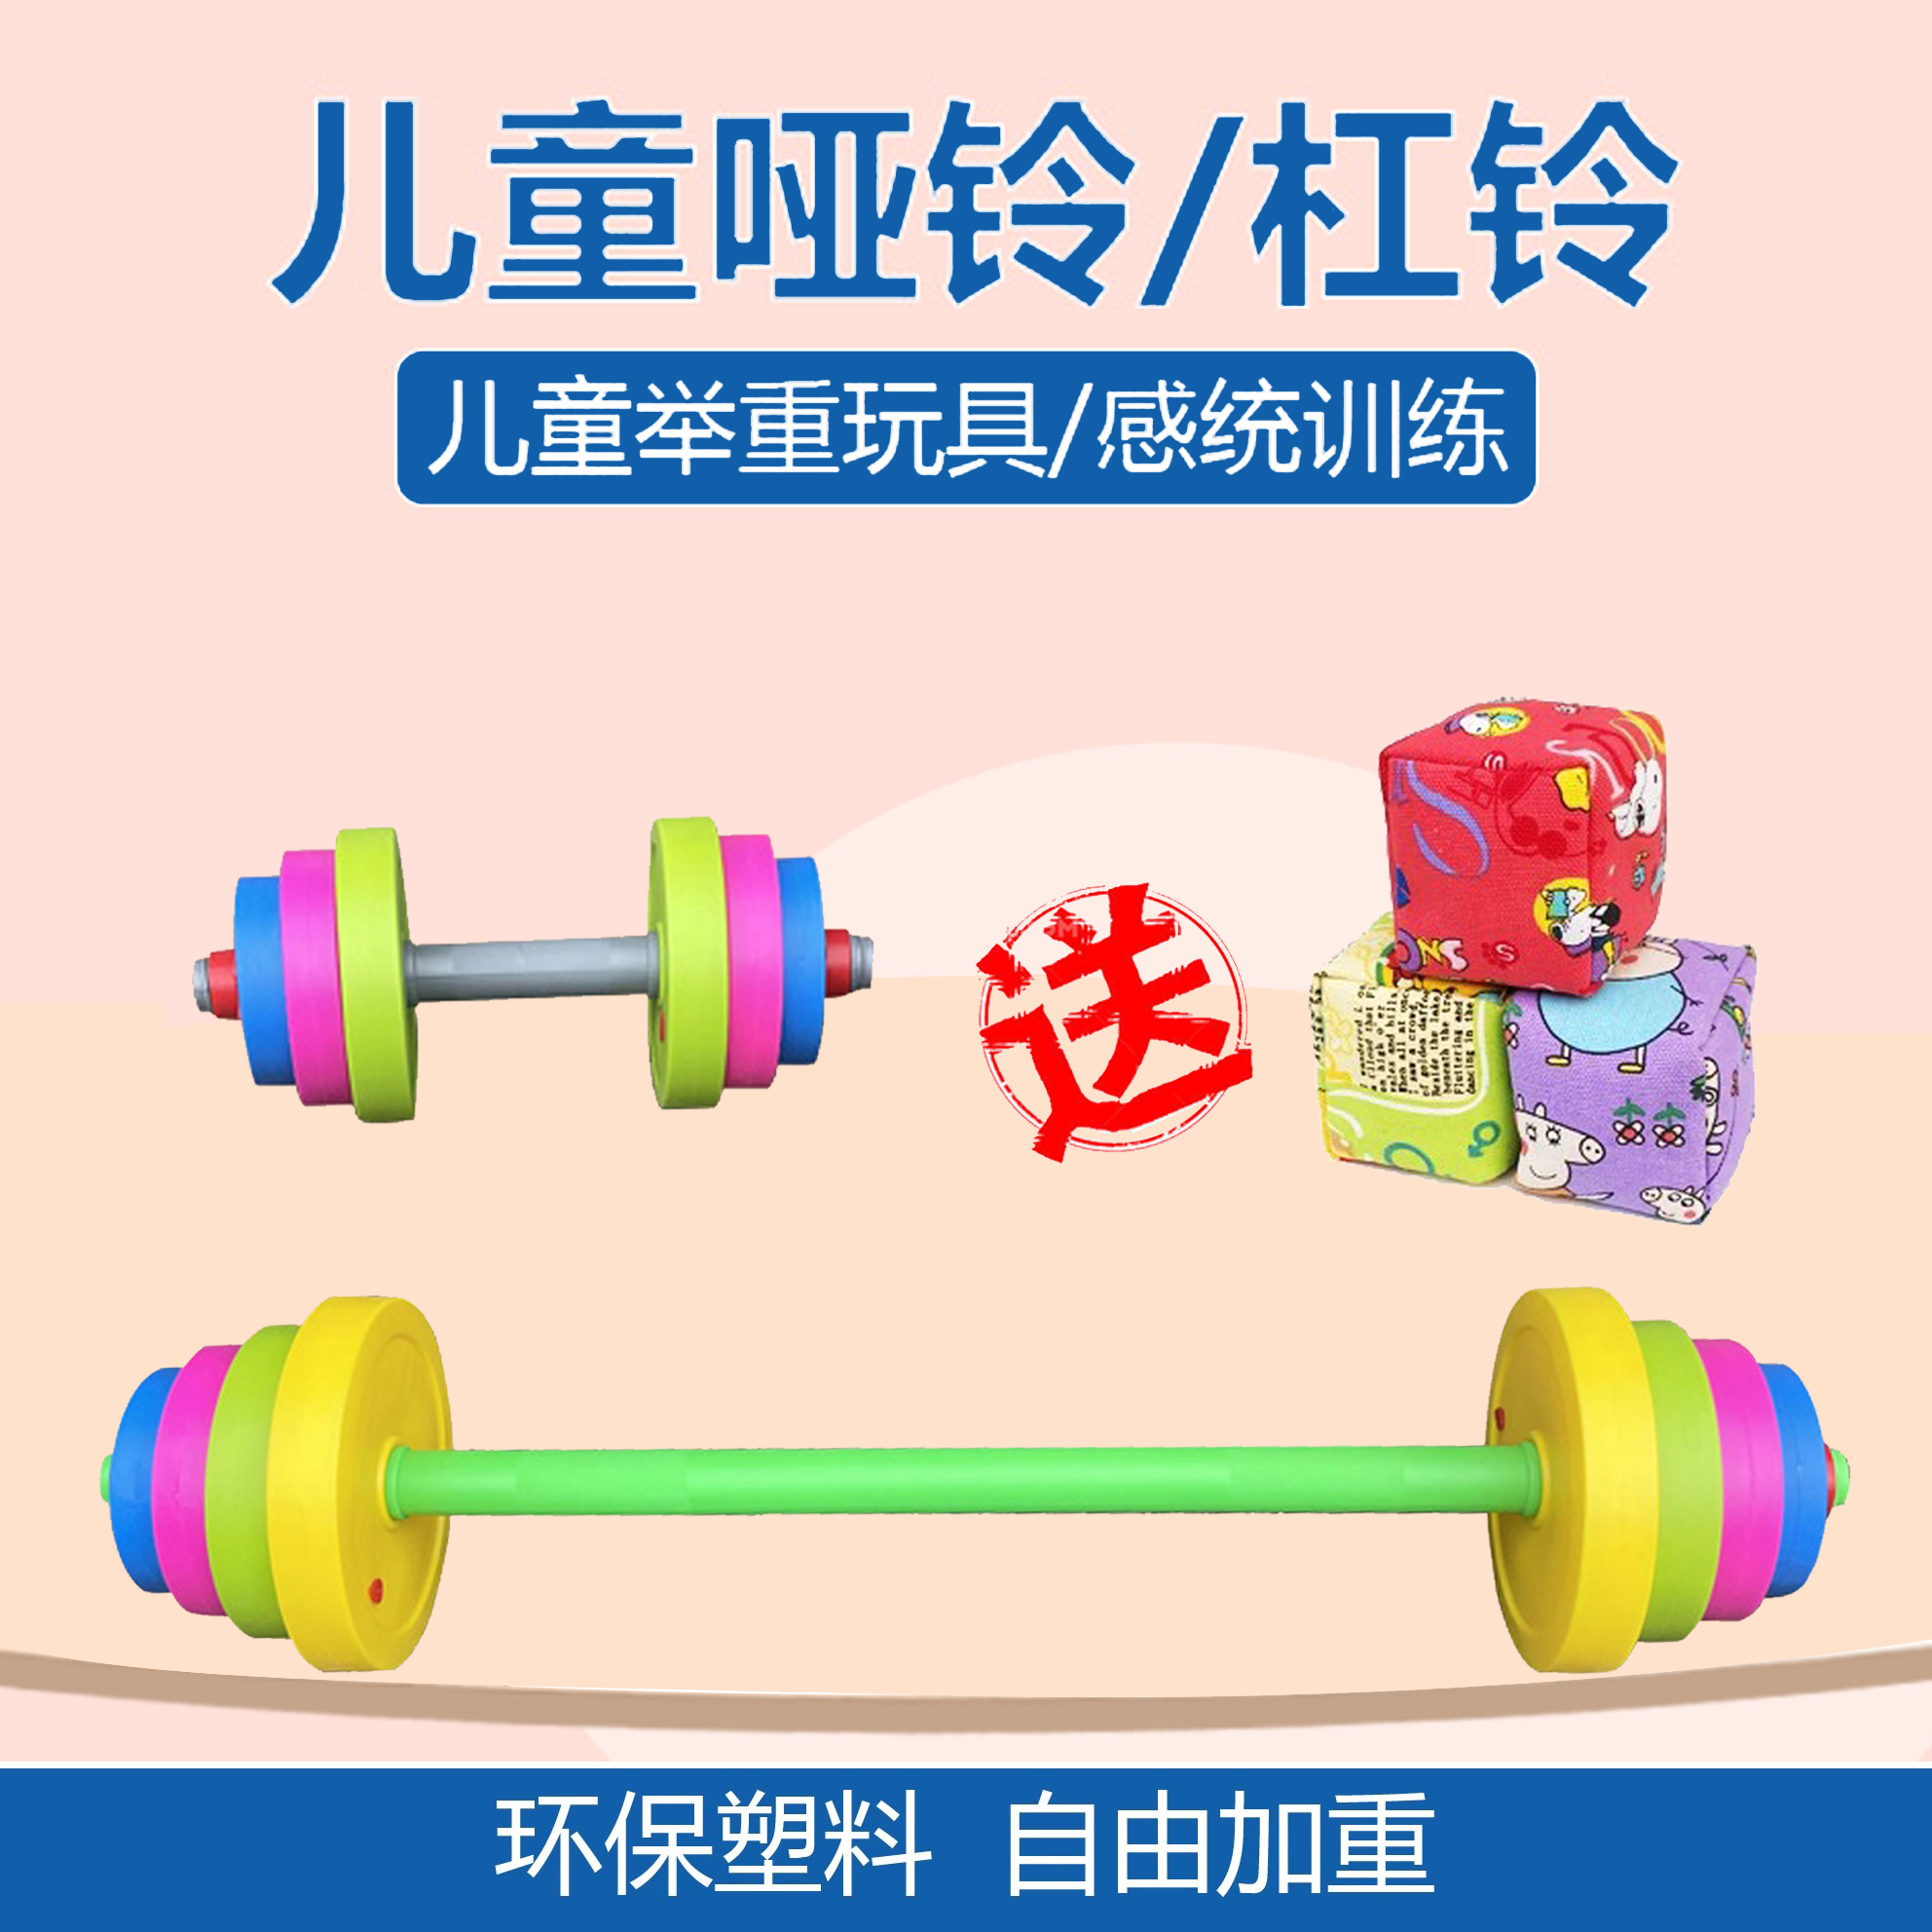 儿童举重器材小孩子杠铃玩具幼儿园塑料感统训练器材少儿哑铃健身